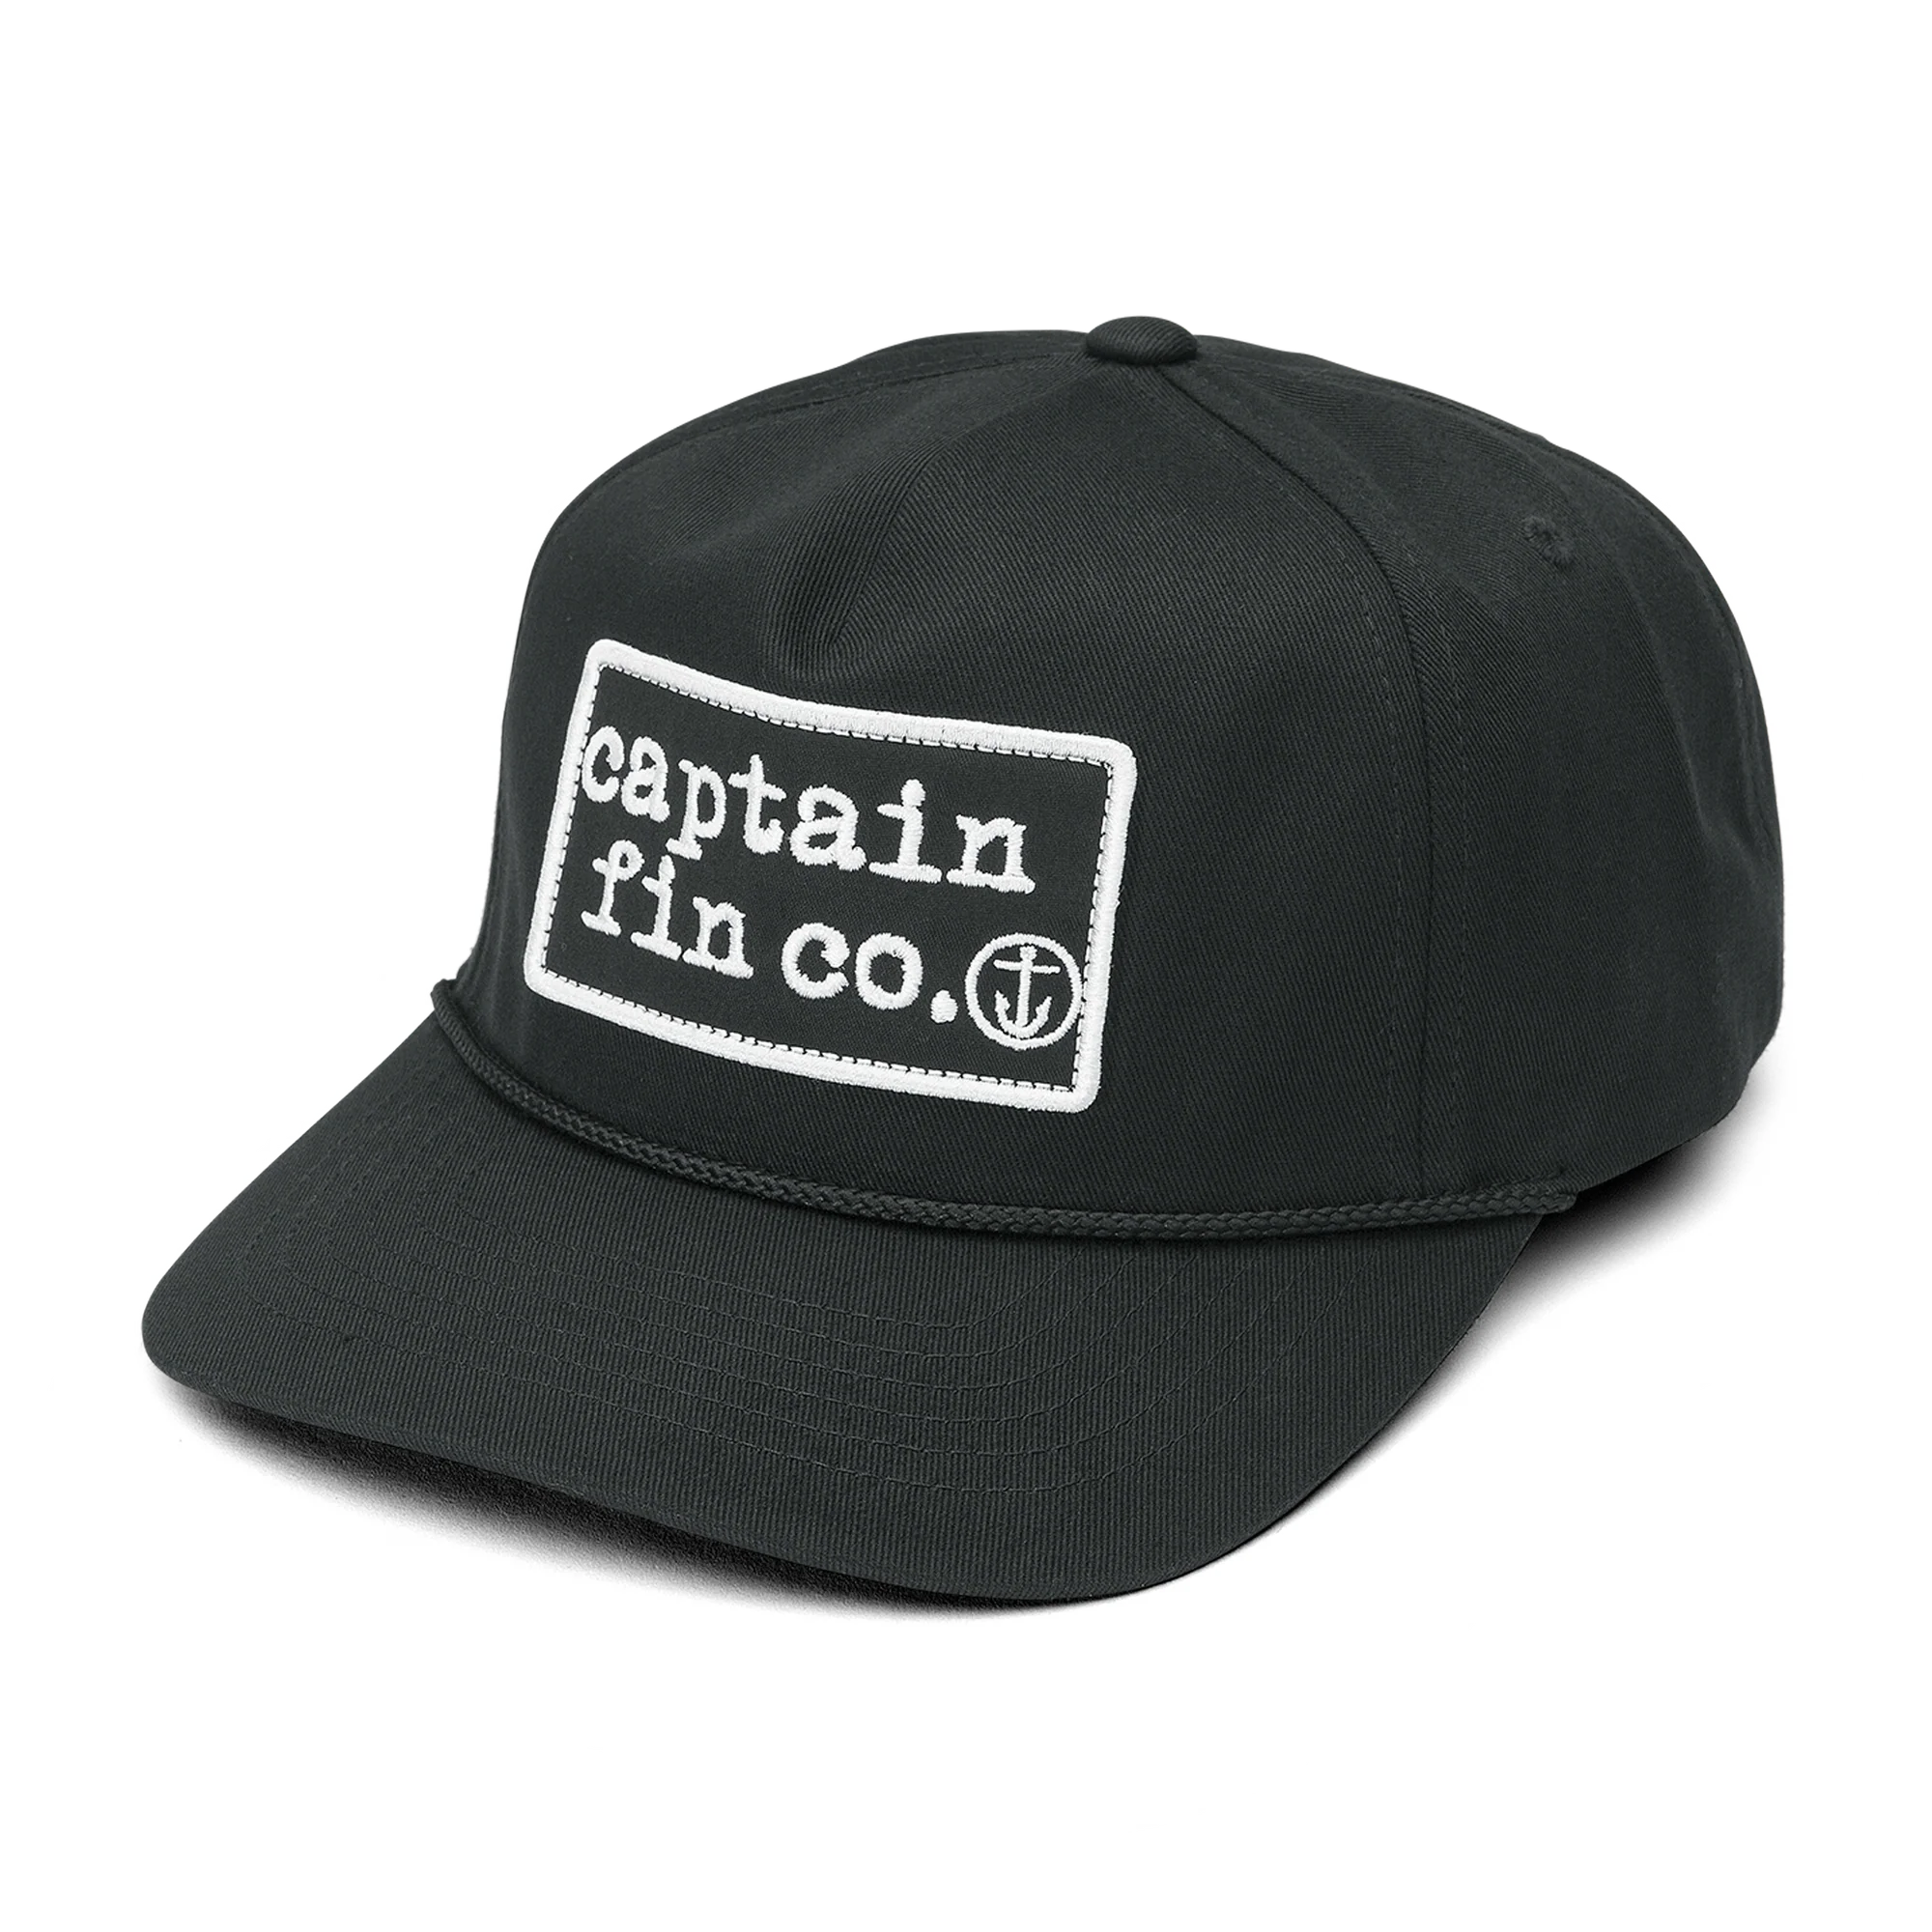 Captain Fin Big patch Hat - Board Store Captain FinHat  